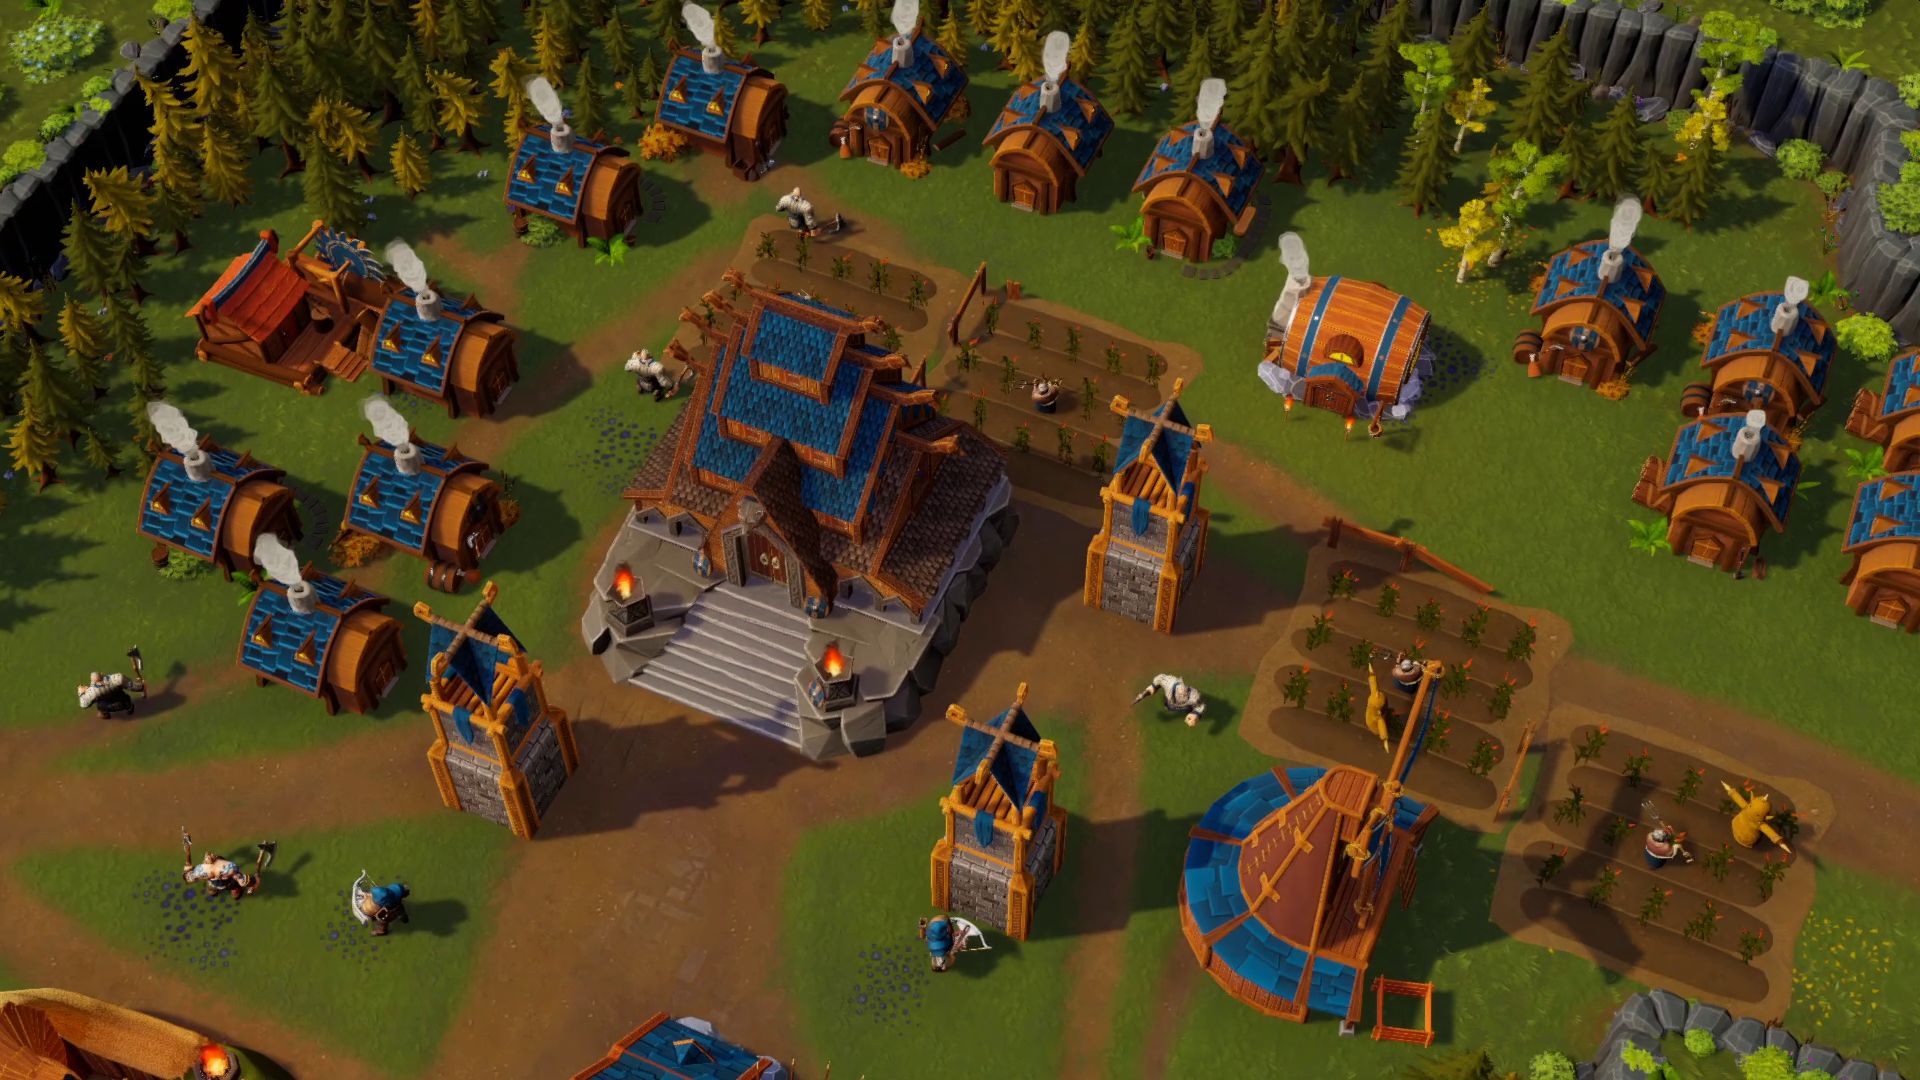 DwarfHeim is a coop RTS city builder set in a fantasy dwarven land